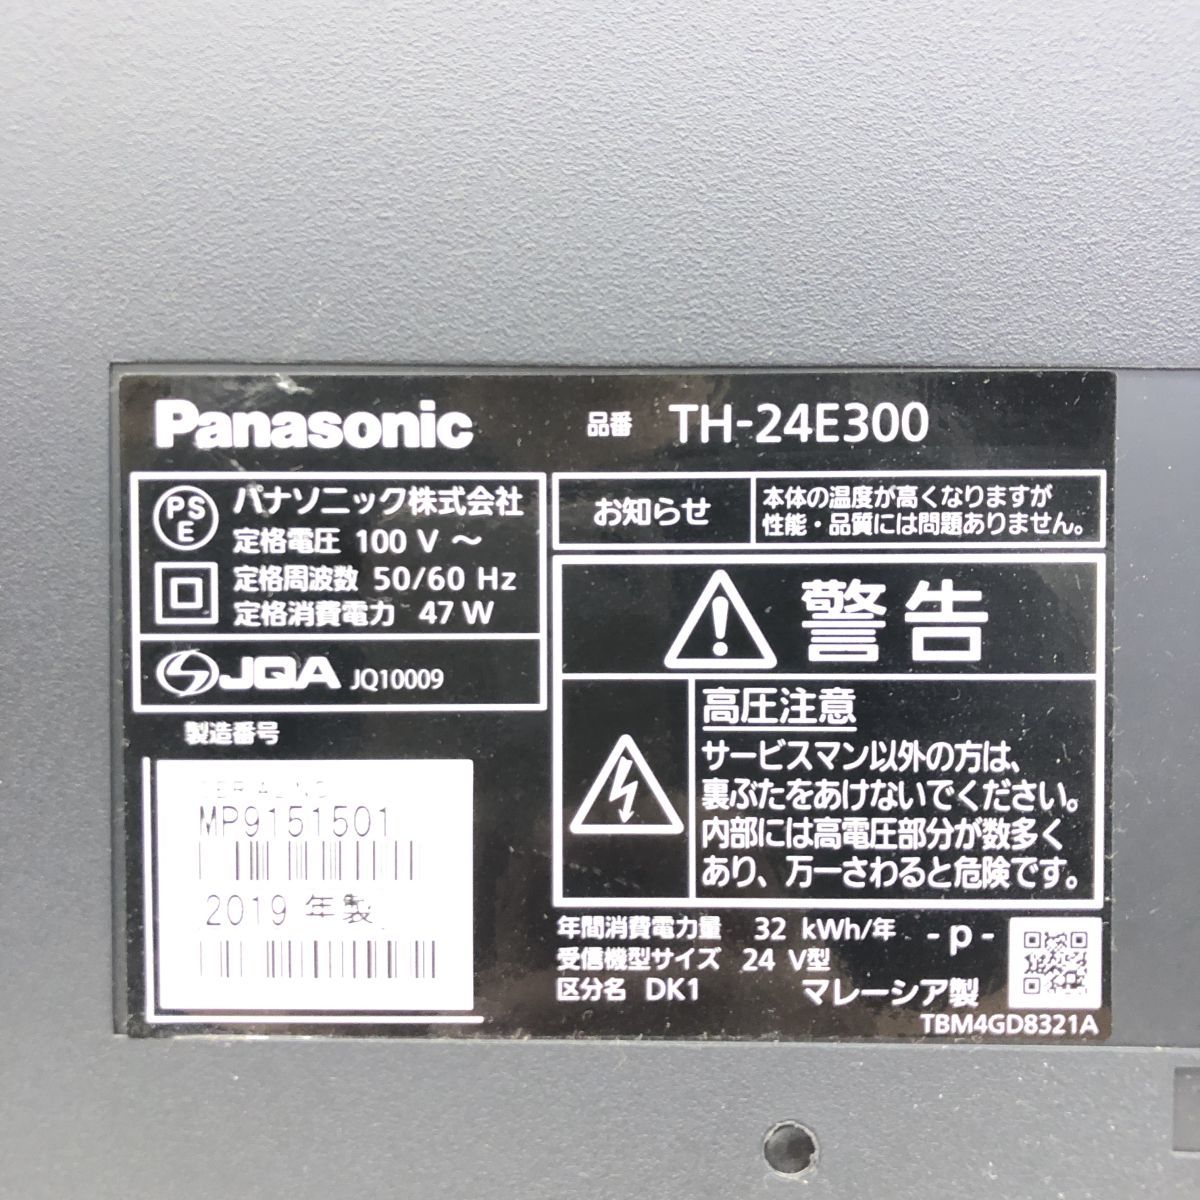 Panasonic パナソニック 液晶テレビ TH-24E300 2019年製 J305-103#140(液晶)｜売買されたオークション情報